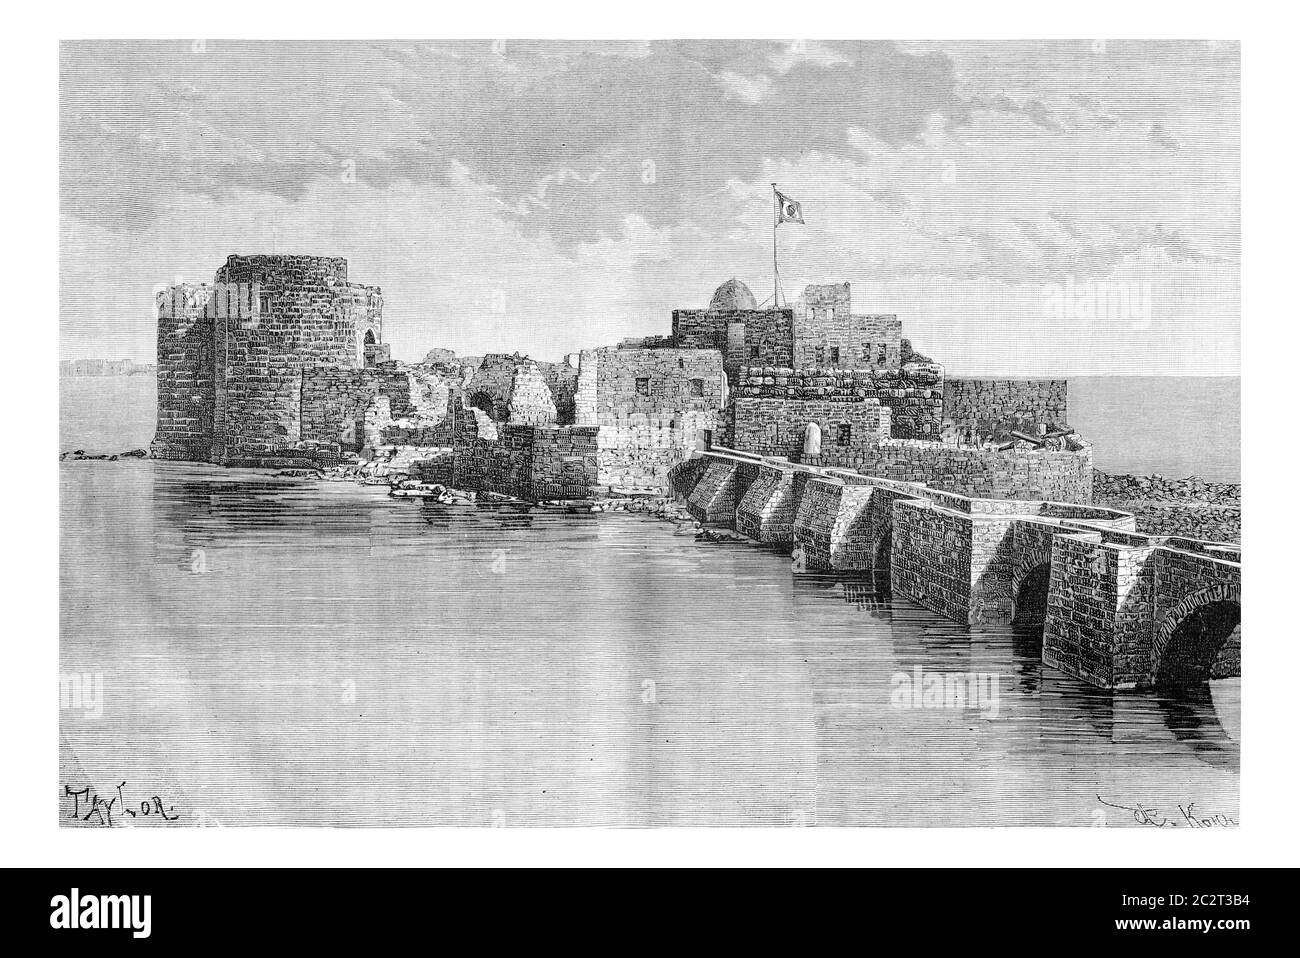 Pont reliant la ville au château de la mer de Sidon à Sidon, Liban, illustration gravée d'époque. Le Tour du monde, Journal de voyage, 1881 Banque D'Images